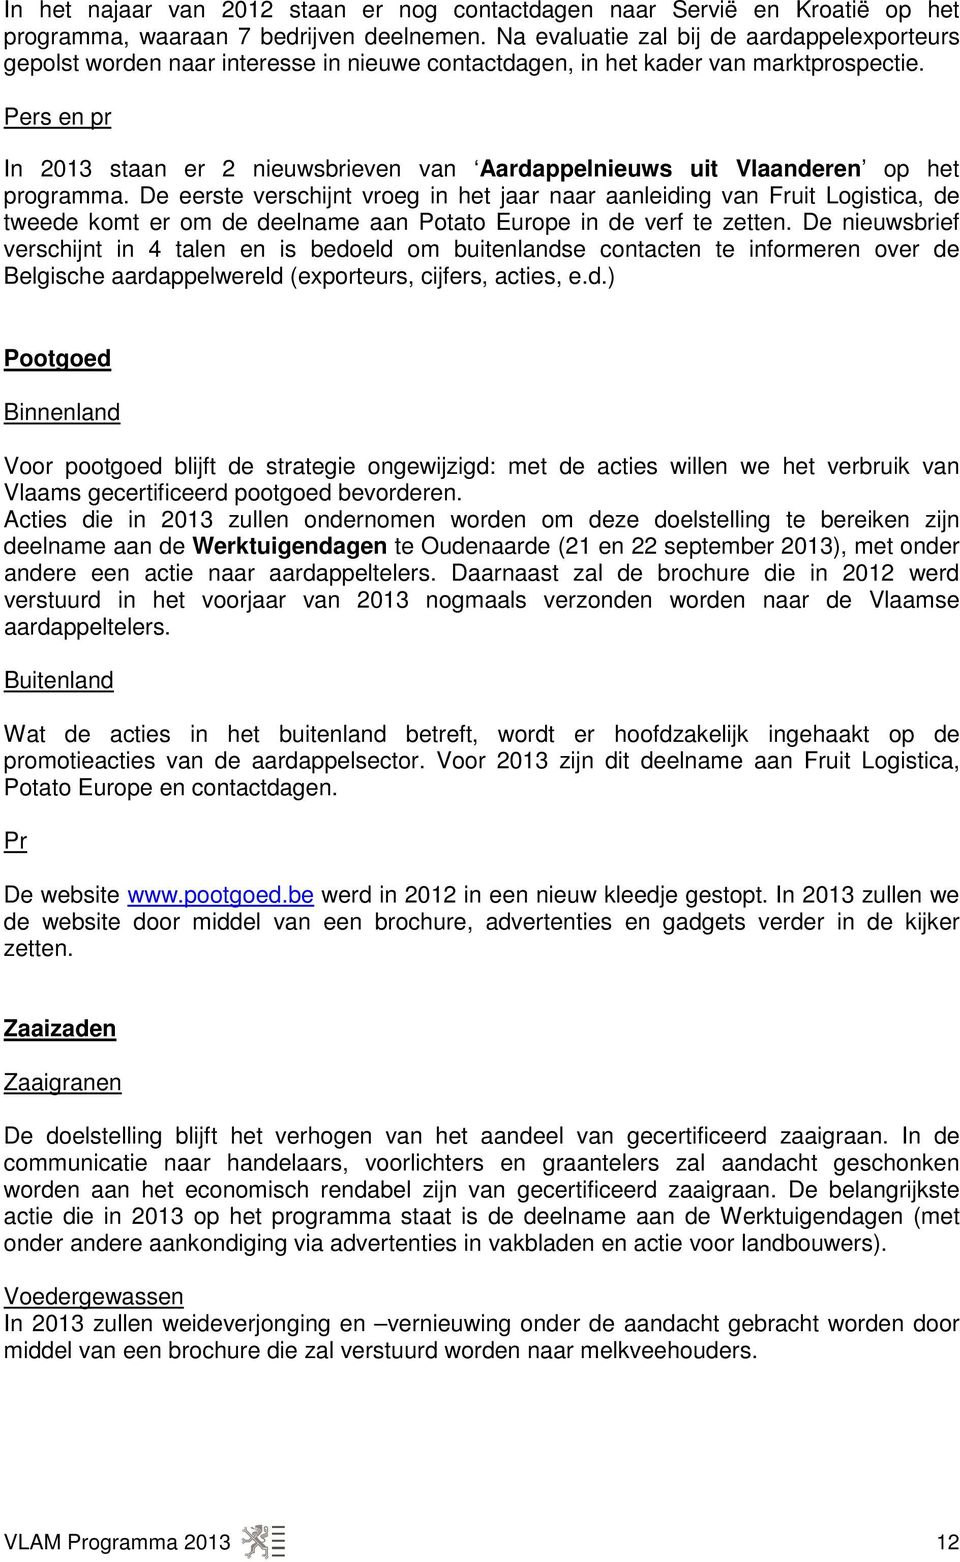 Pers en pr In 2013 staan er 2 nieuwsbrieven van Aardappelnieuws uit Vlaanderen op het programma.